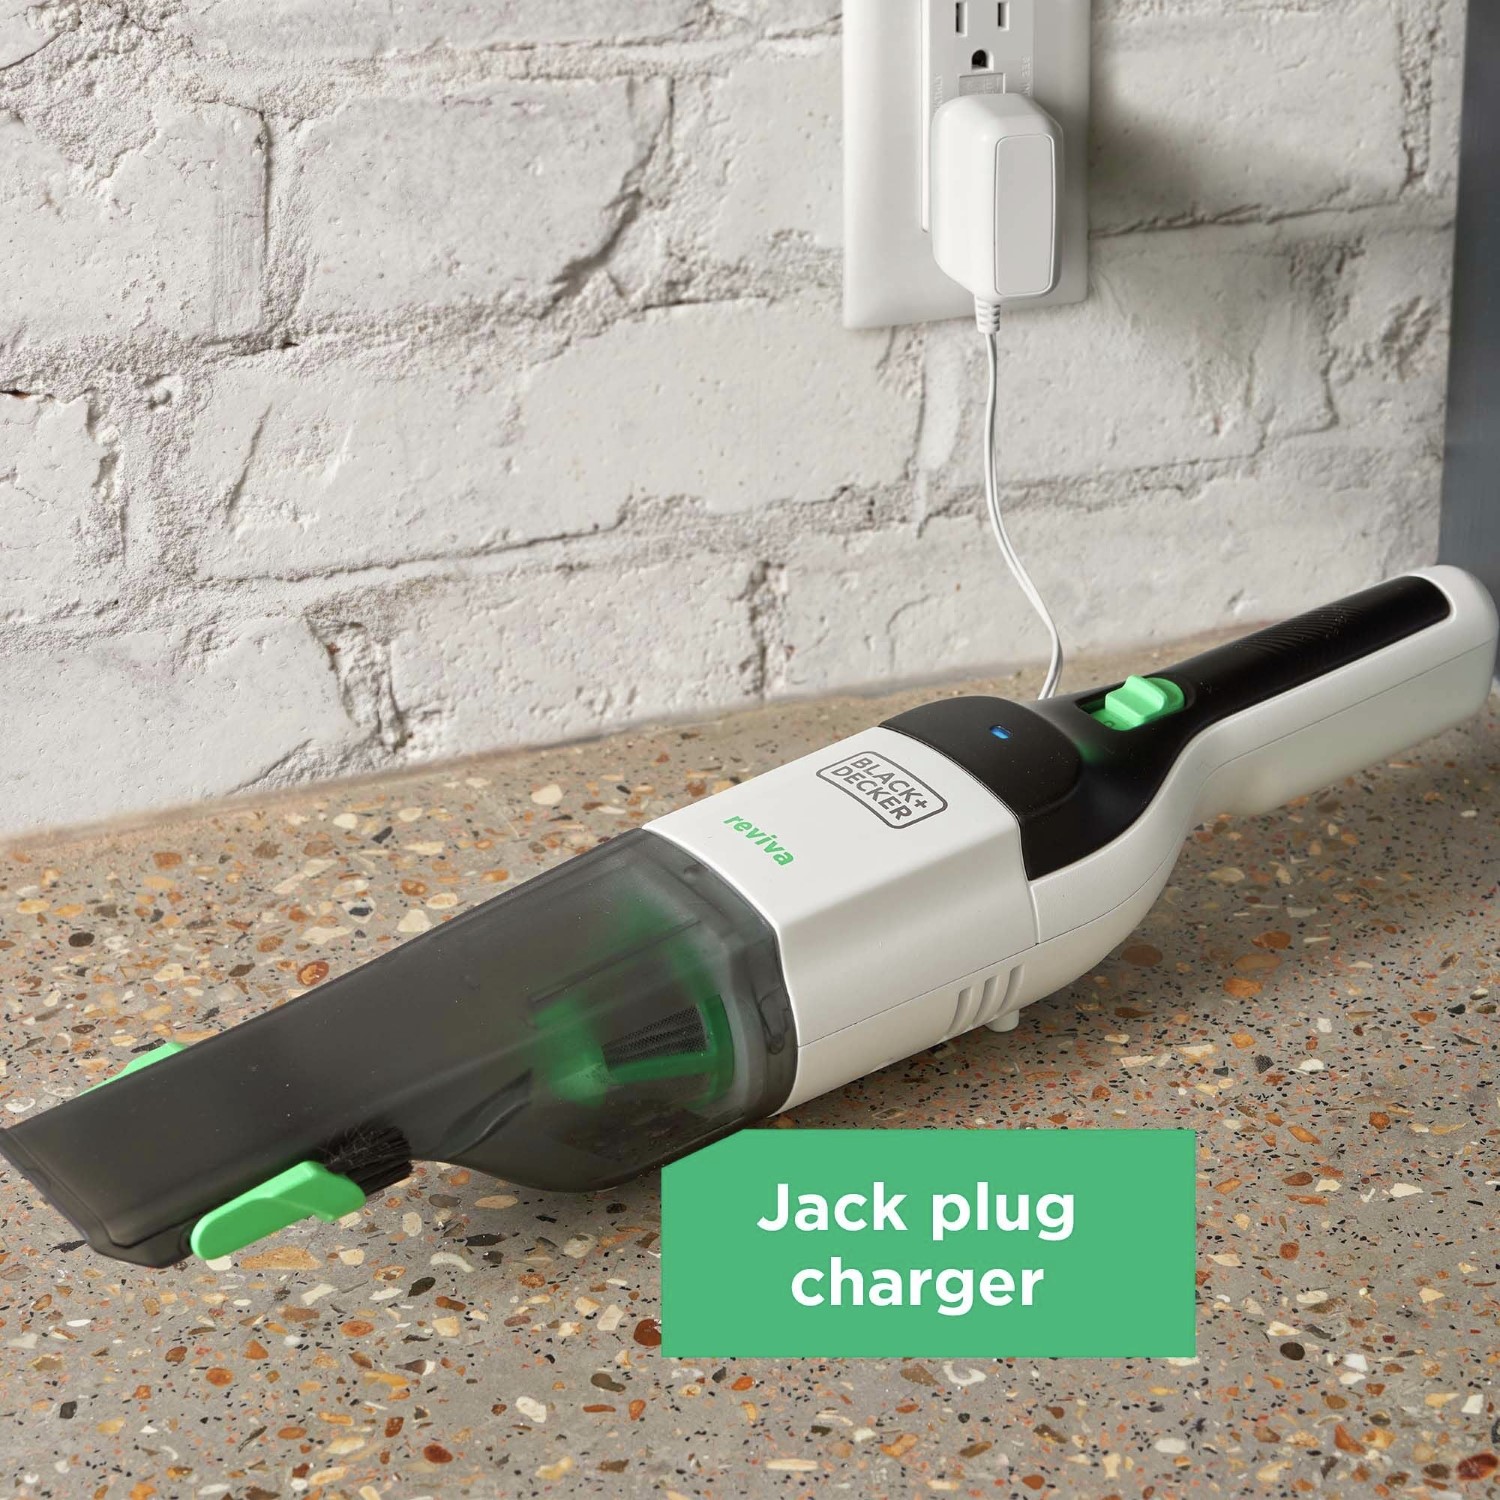 Jack plug charger.